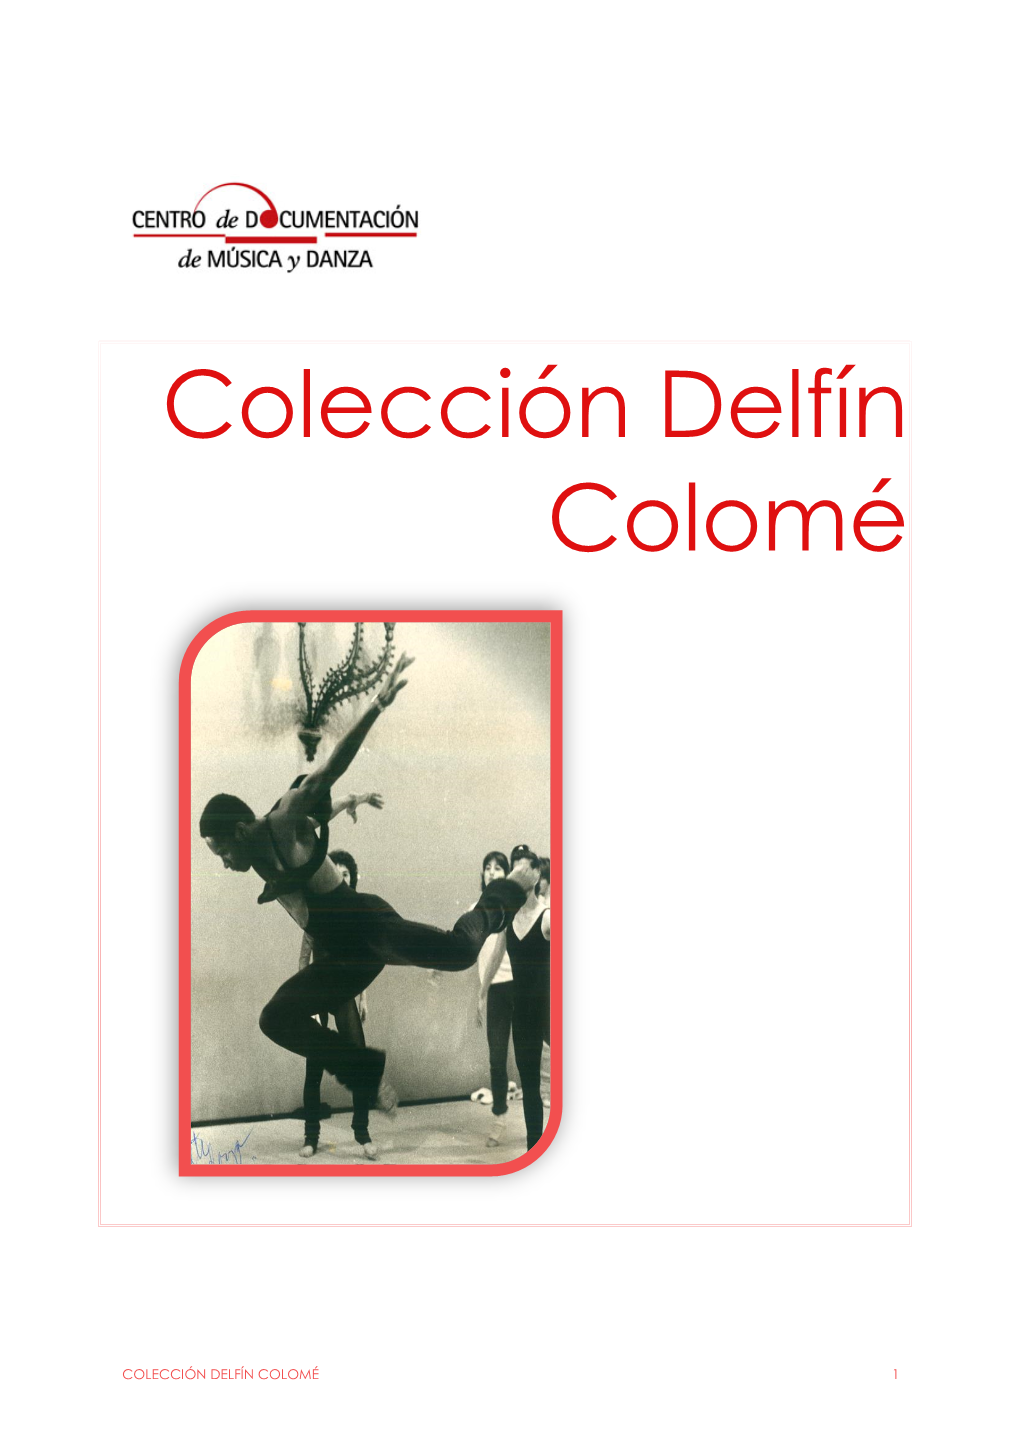 Colección Delfín Colomé